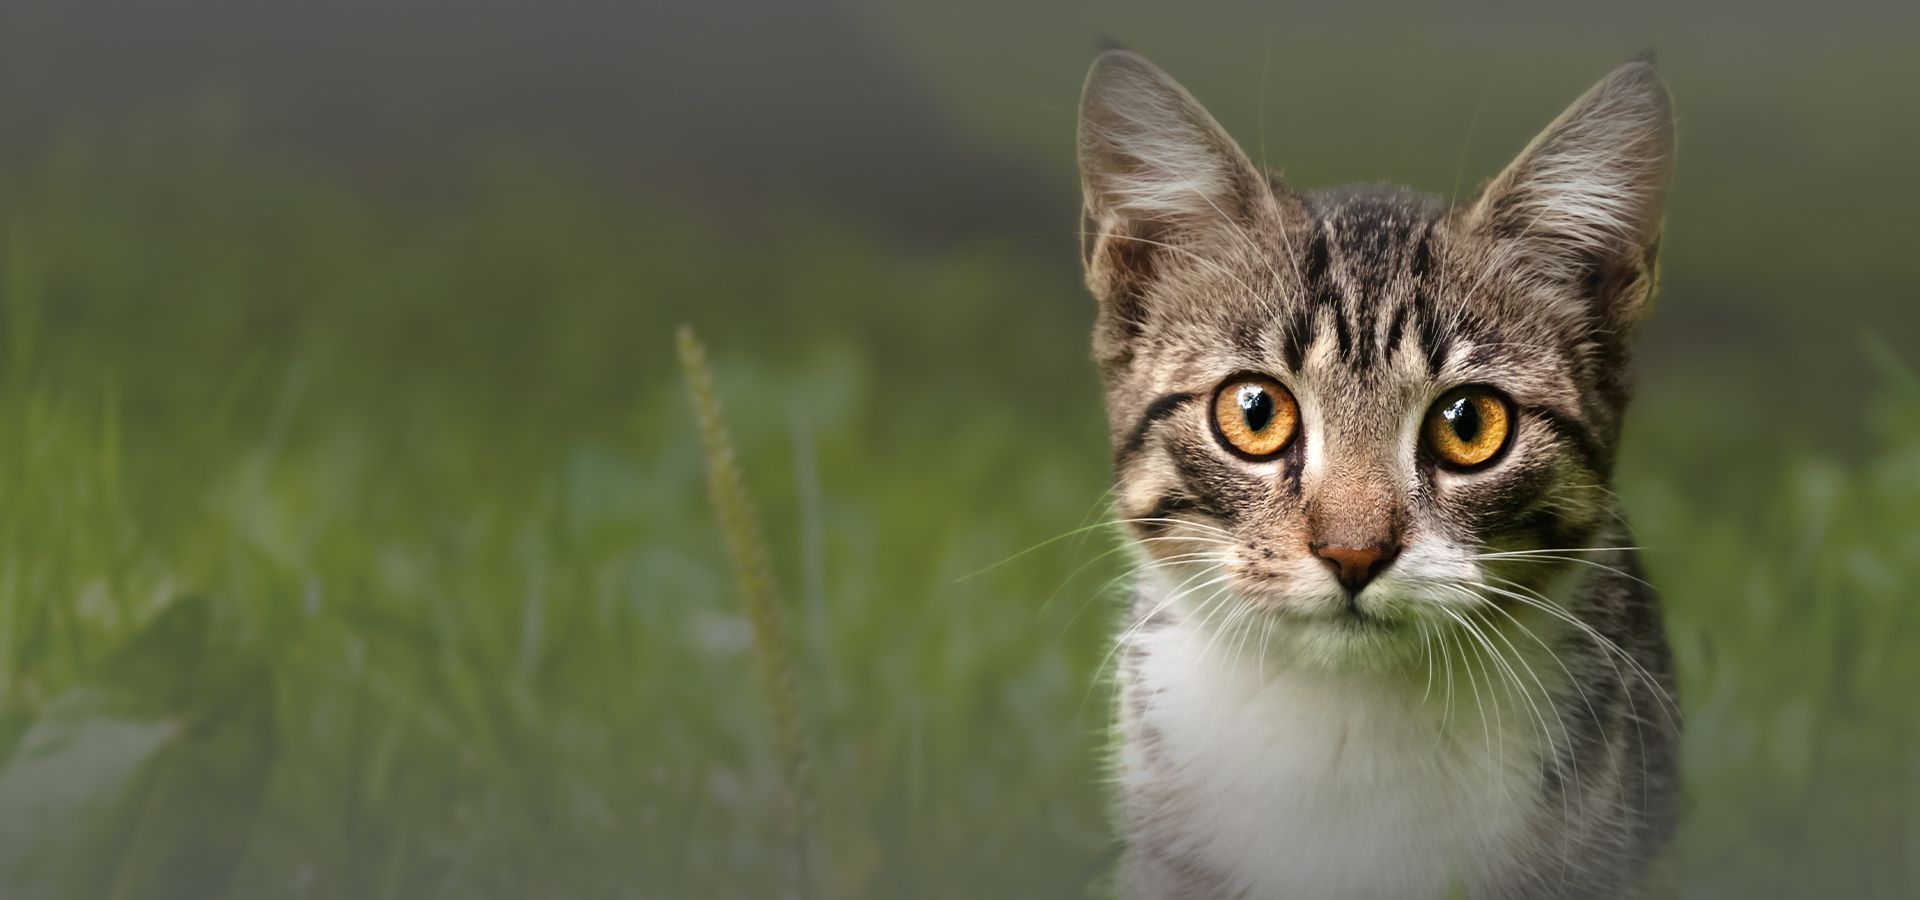 little striped kitten among green grass